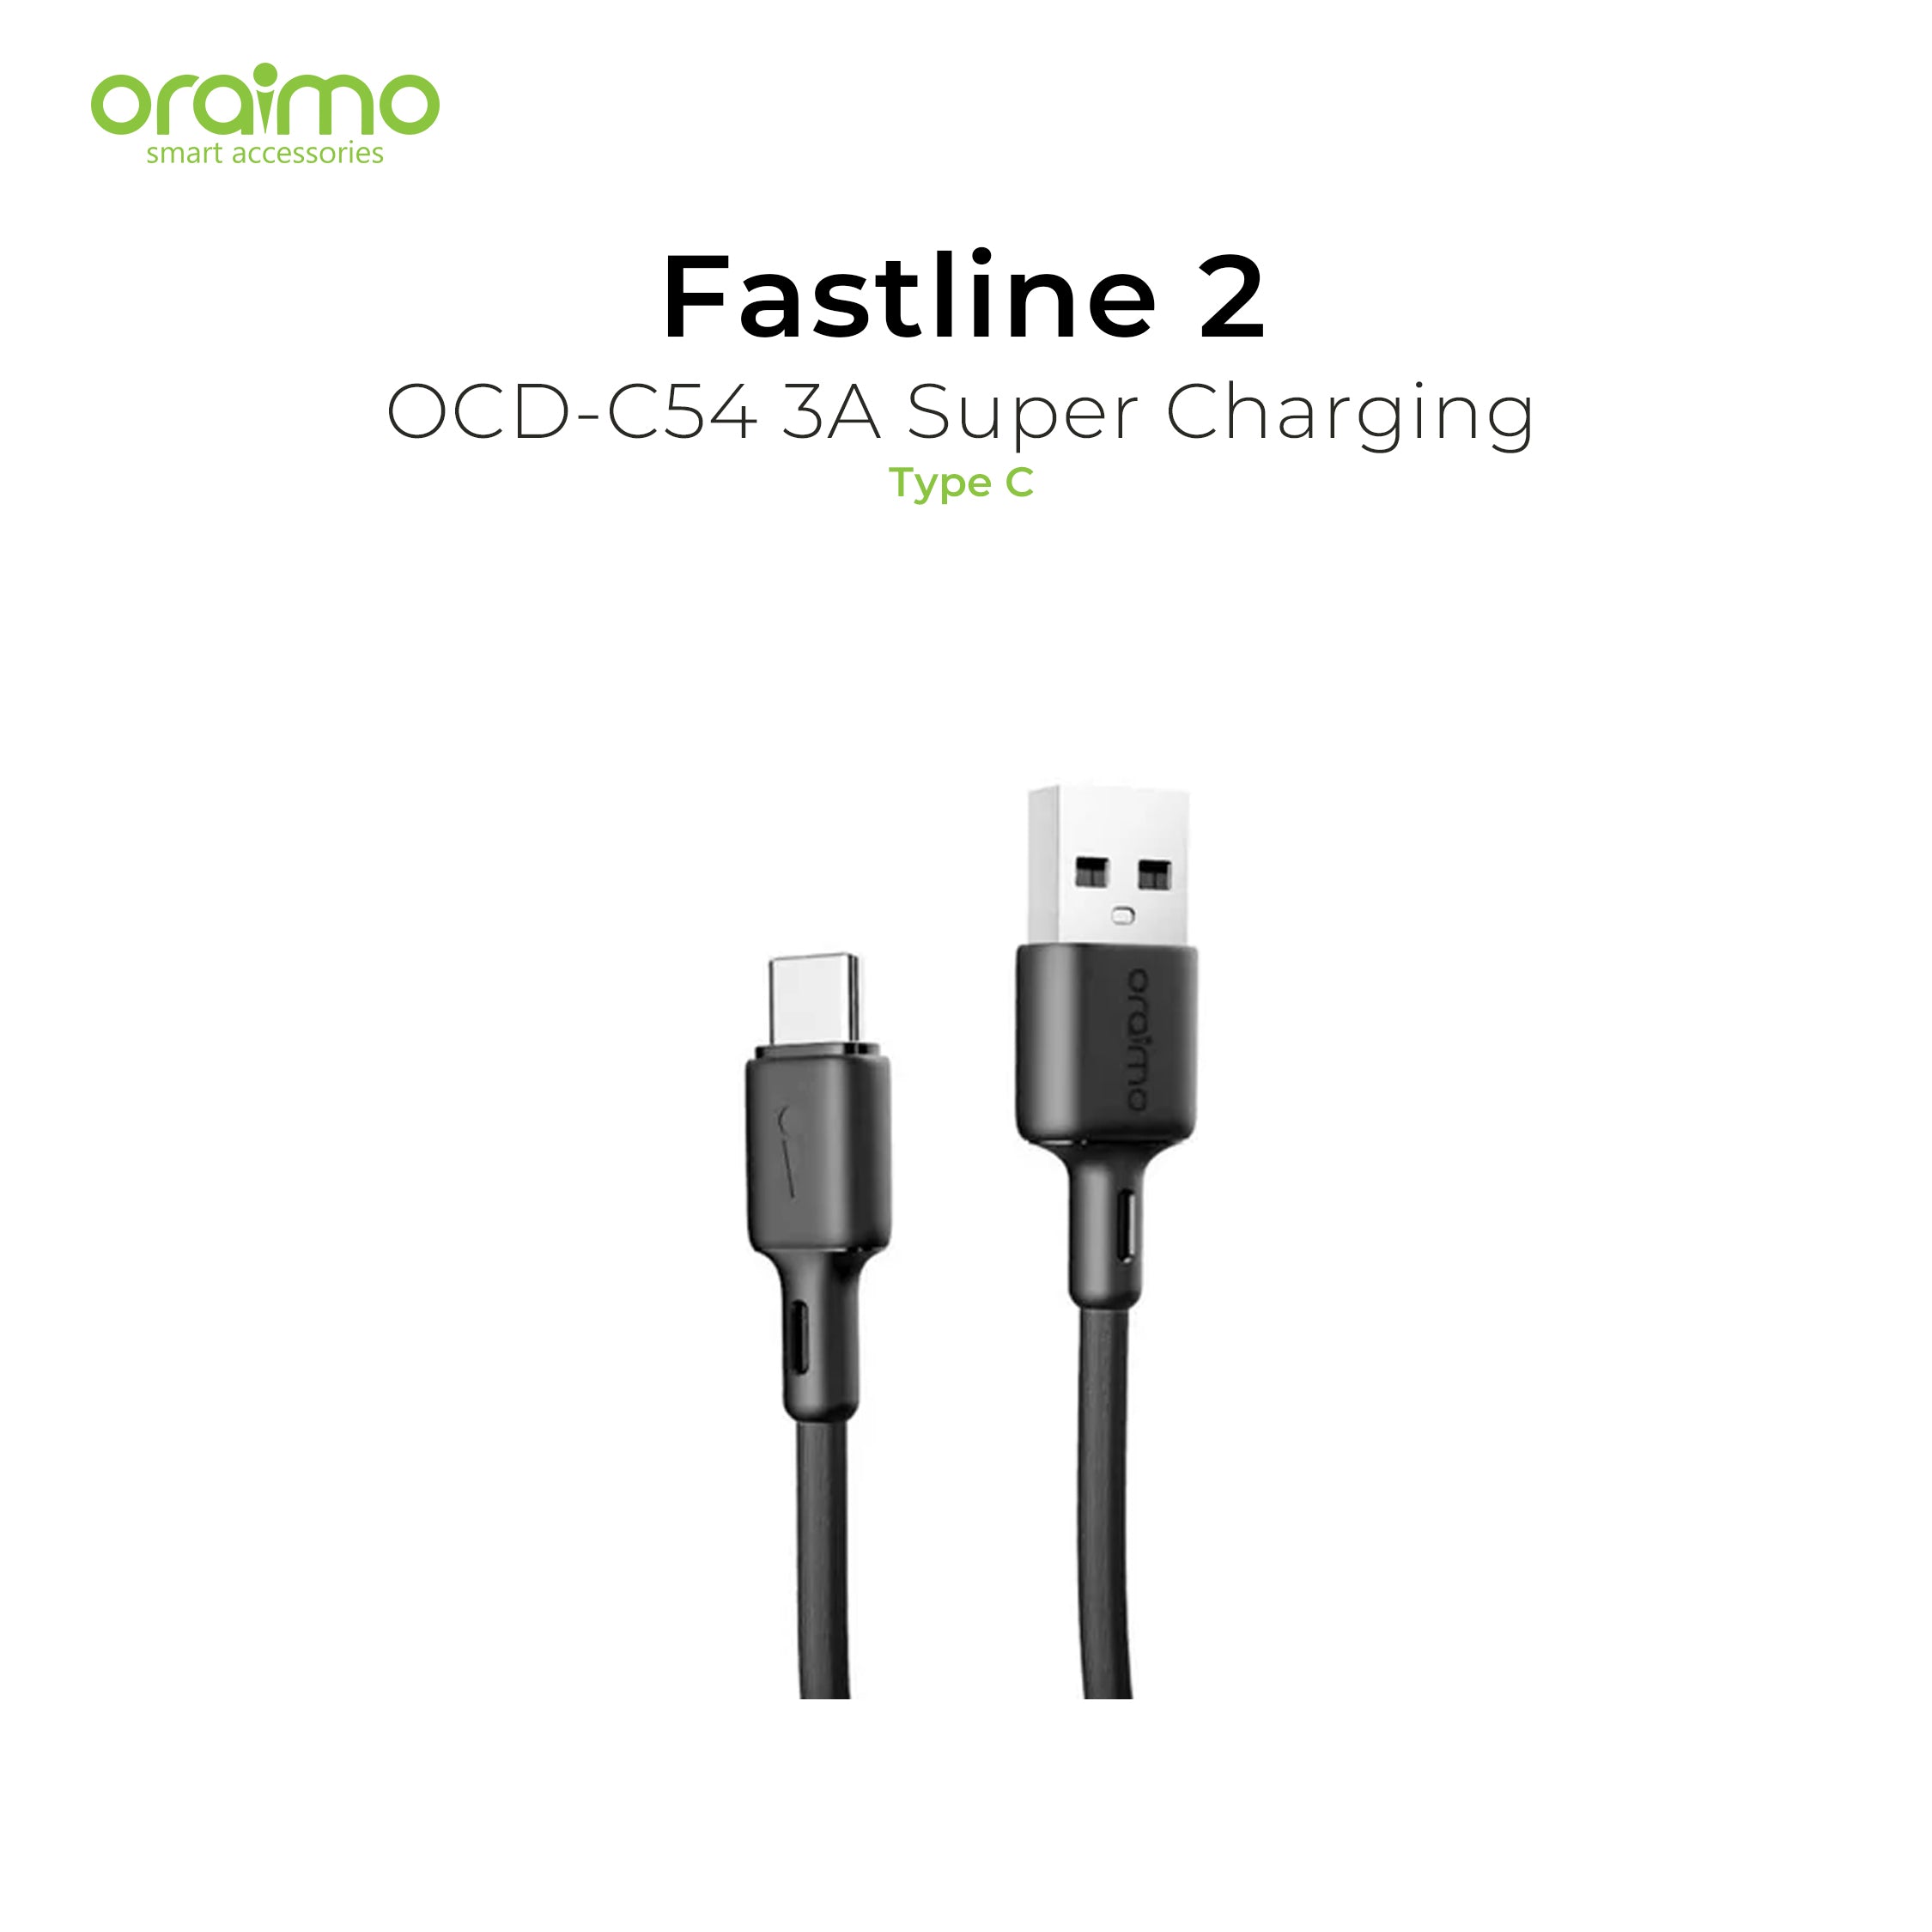 Oraimo Fastline 2 Type C Cable OCD-C54